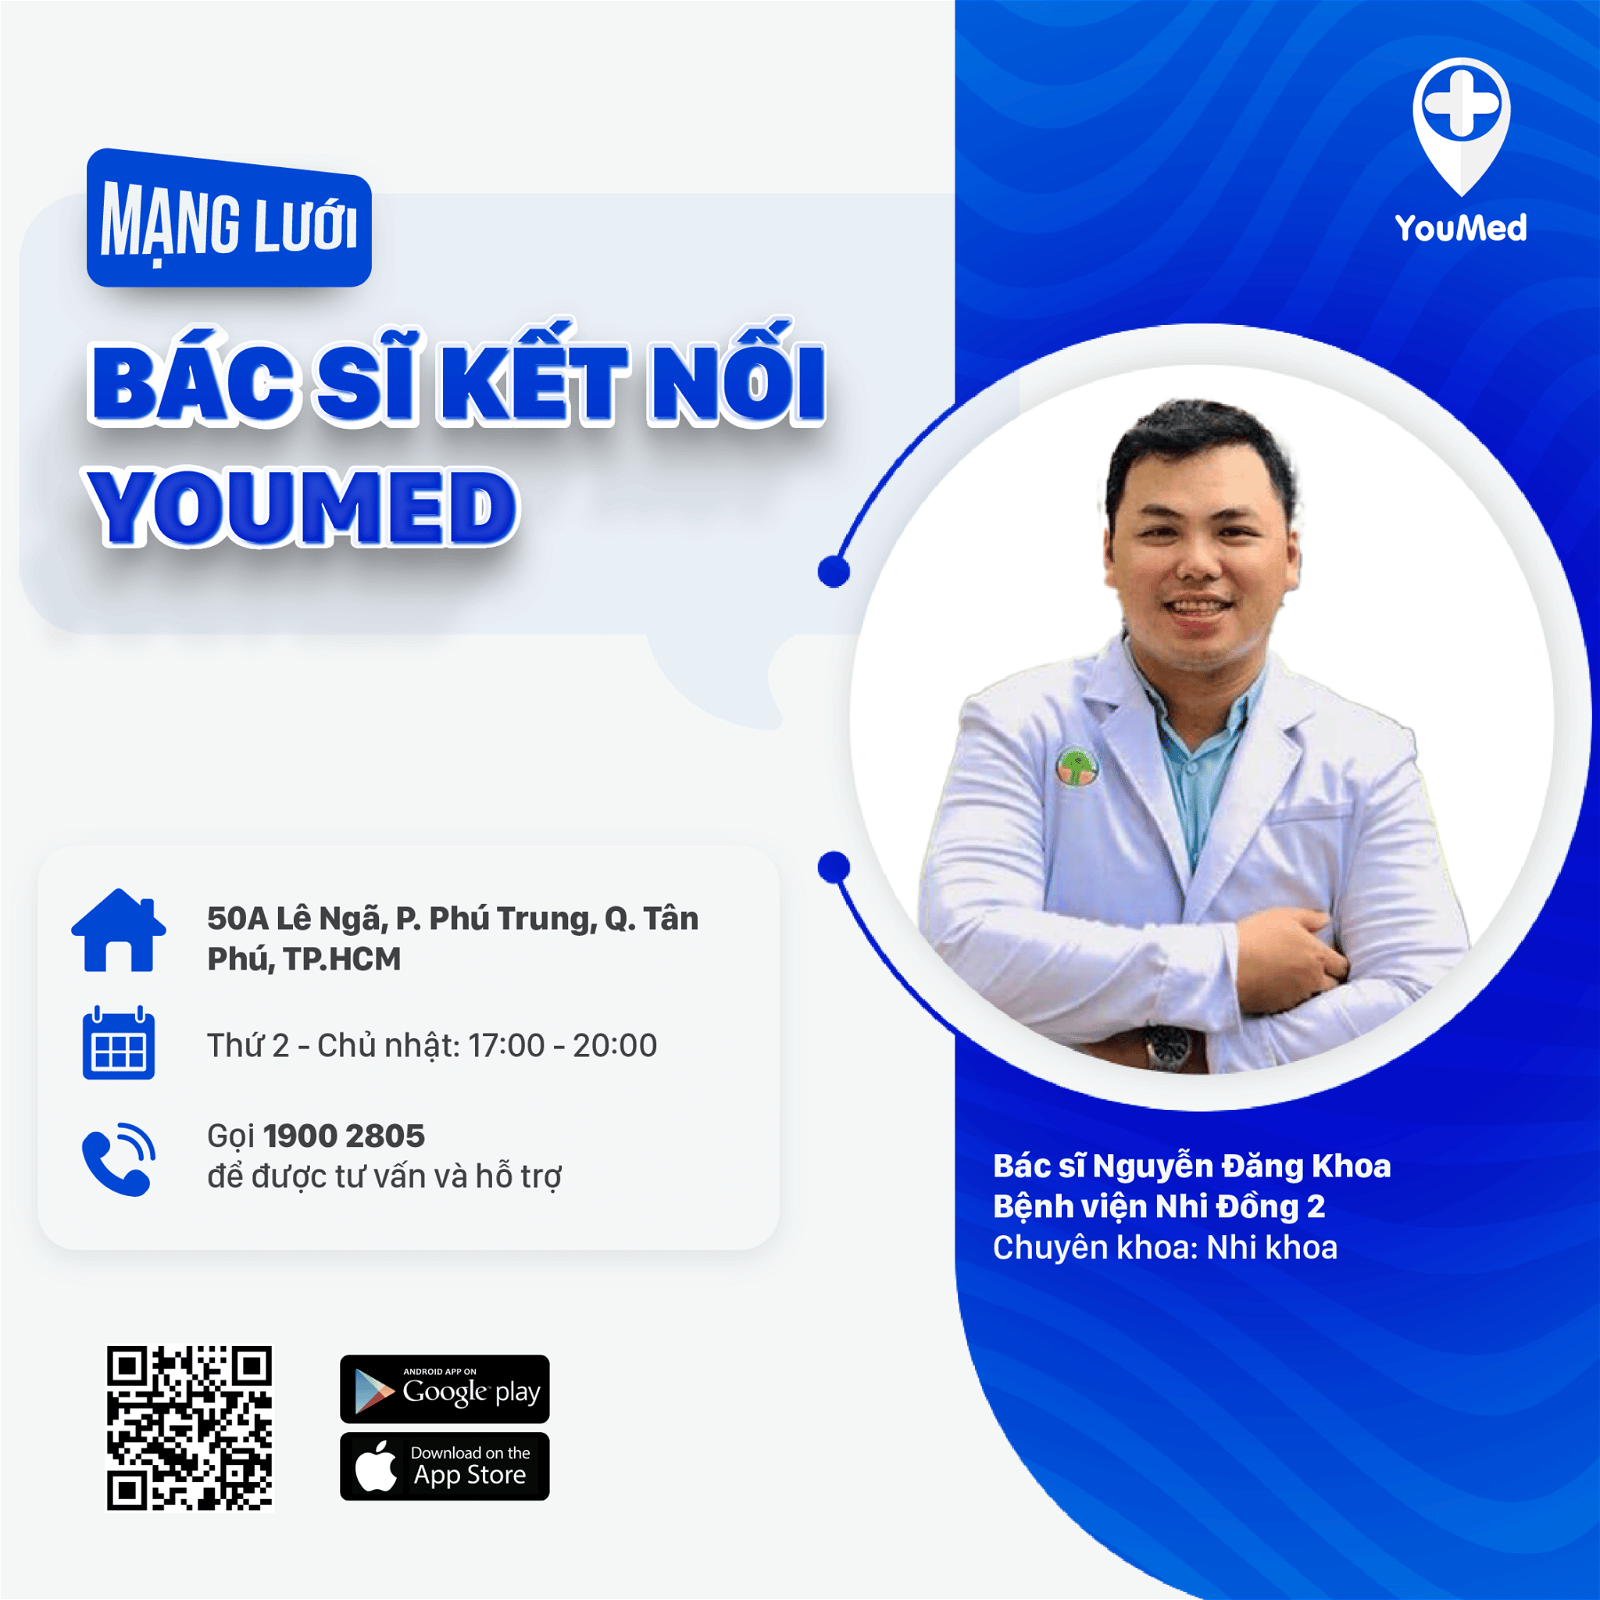 Bác sĩ chuyên khoa Nhi, Nguyễn Đăng Khoa